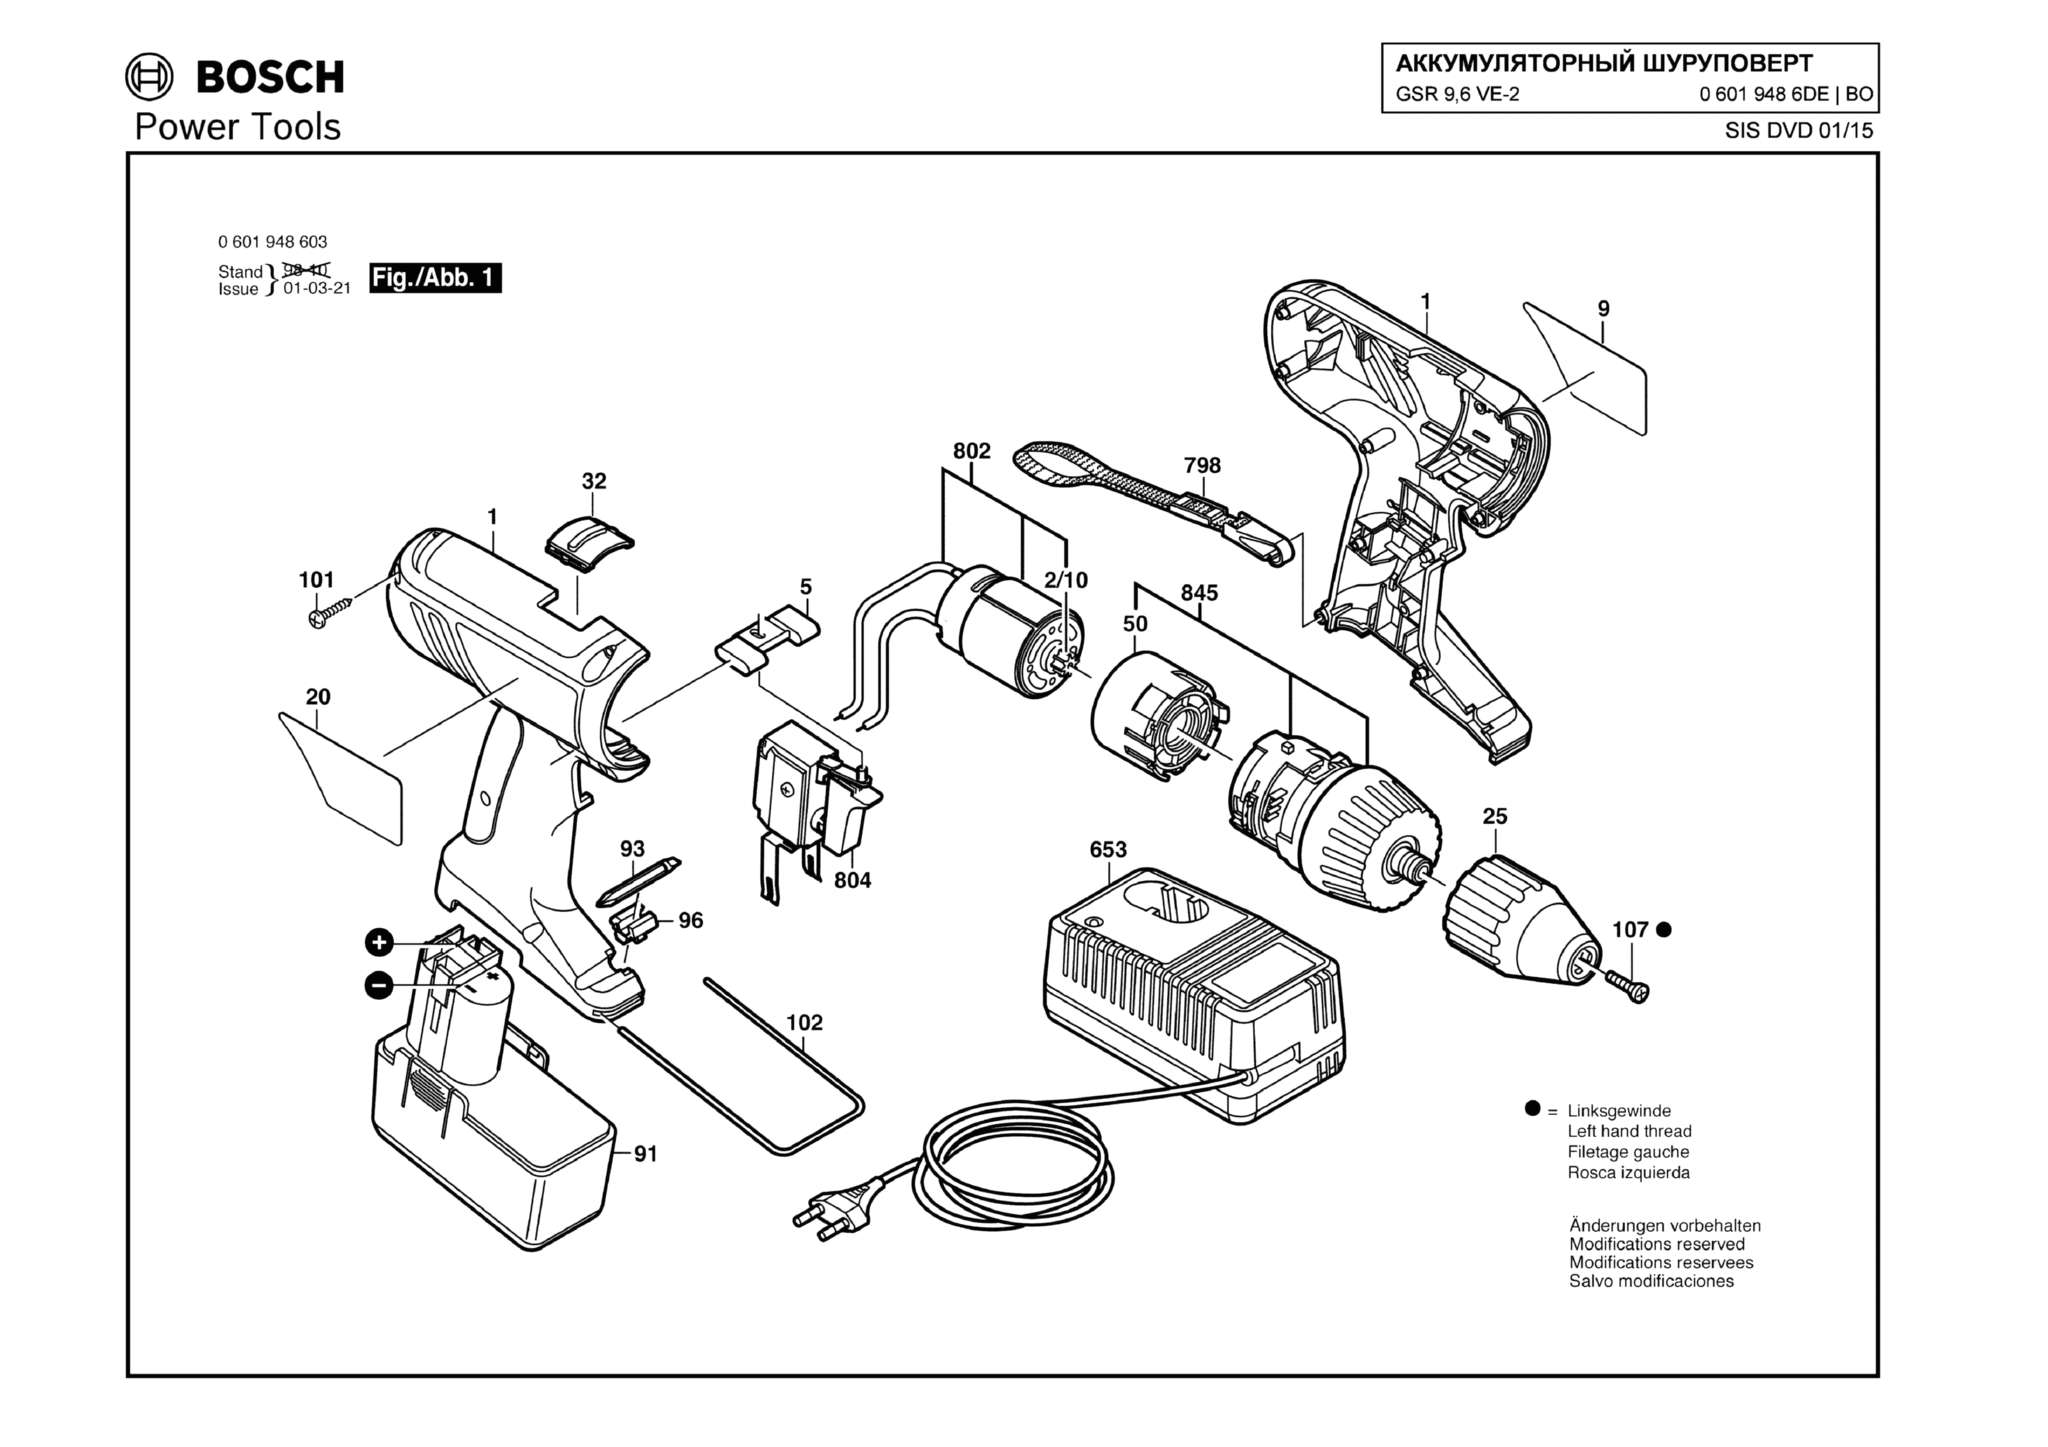 Запчасти, схема и деталировка Bosch GSR 9,6 VE-2 (ТИП 06019486DE)